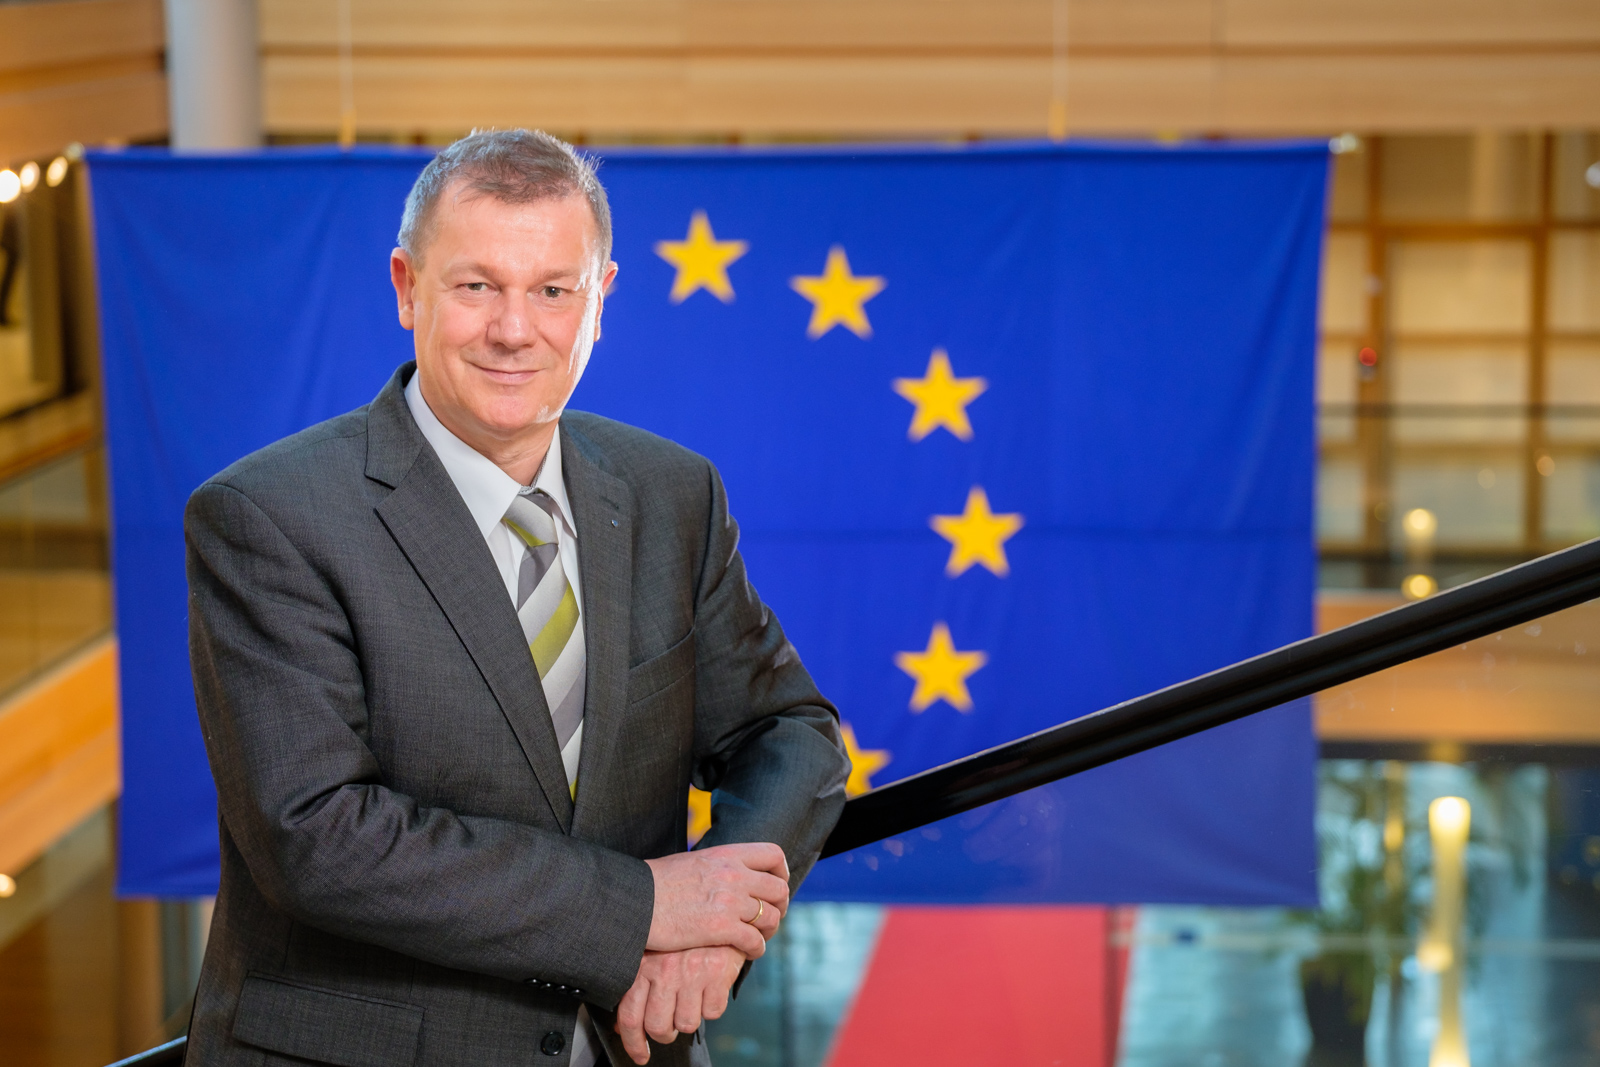 Markus Pieper an ein Geländer gelehnt vor der EU-Flagge